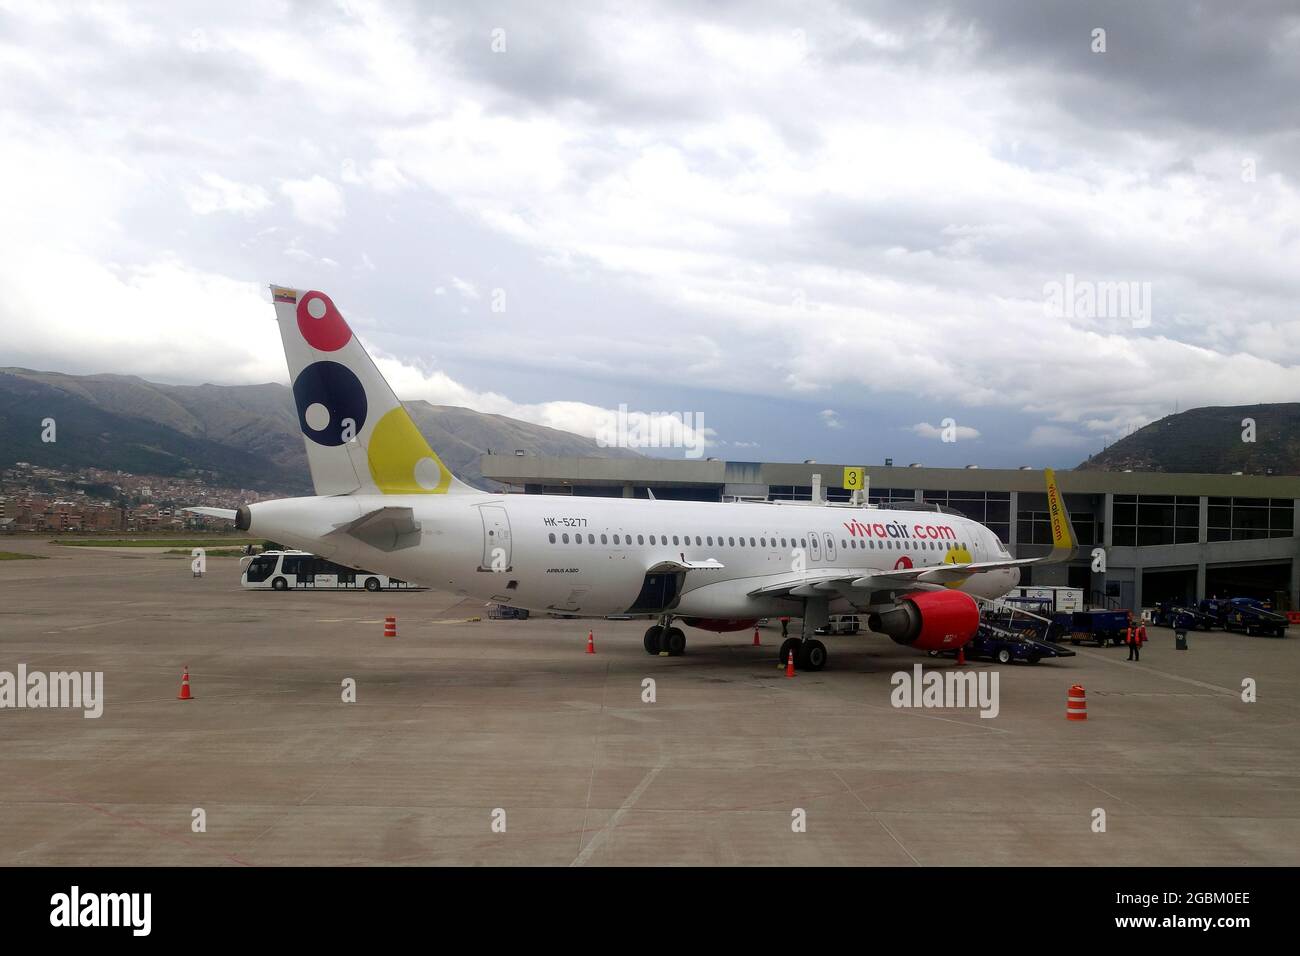 Viva Air Colombia (è una compagnia aerea colombiana low-cost con sede a Rionegro, Antioquia, Colombia), aereo Airbus A320 Foto Stock